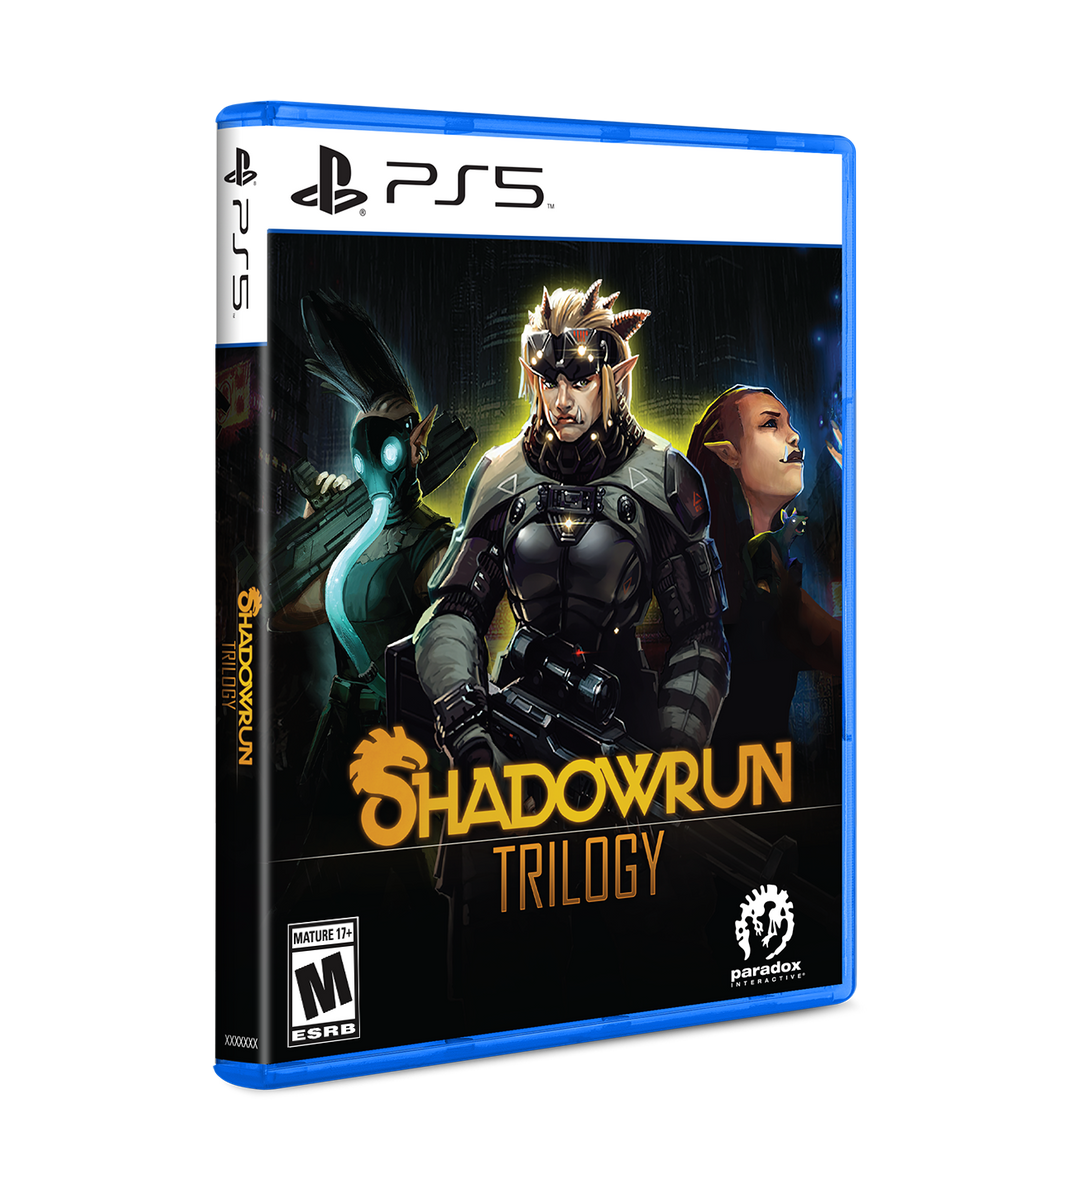 Shadowrun RPG: 6th Edition Power Plays